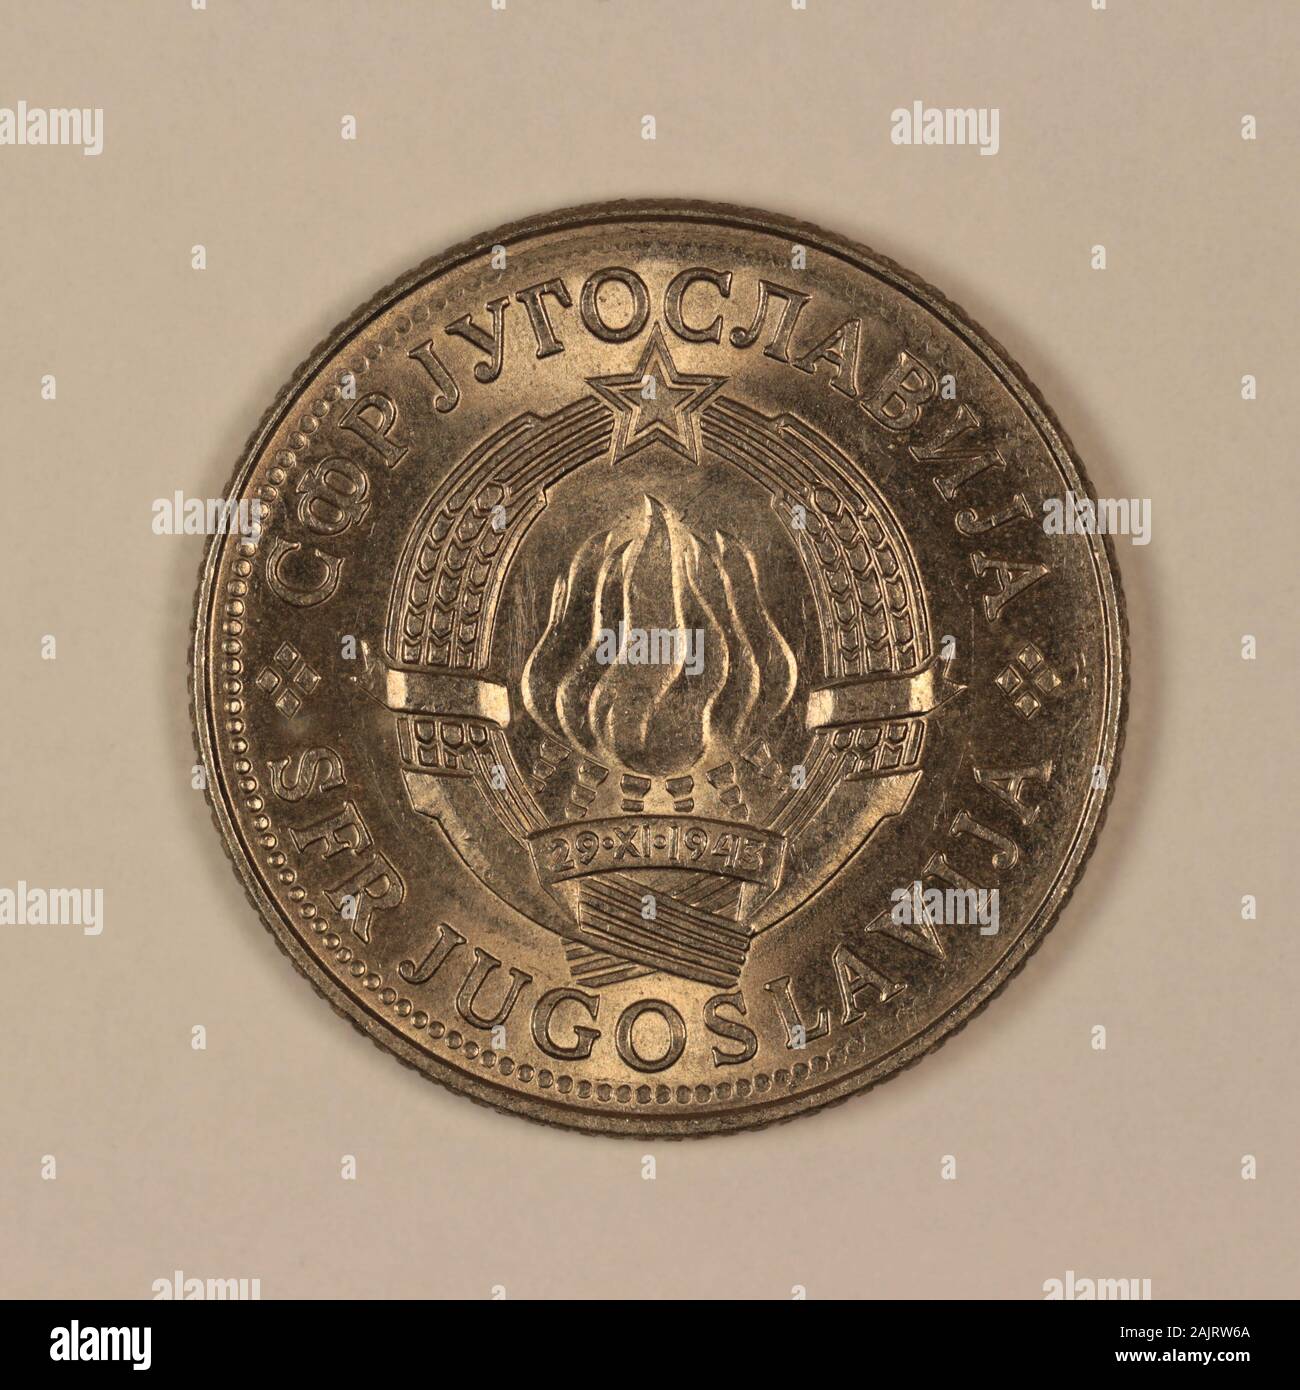 Vorderseite einer ehemaliguen Jugoslawischen 10 Dinar Münze Foto Stock